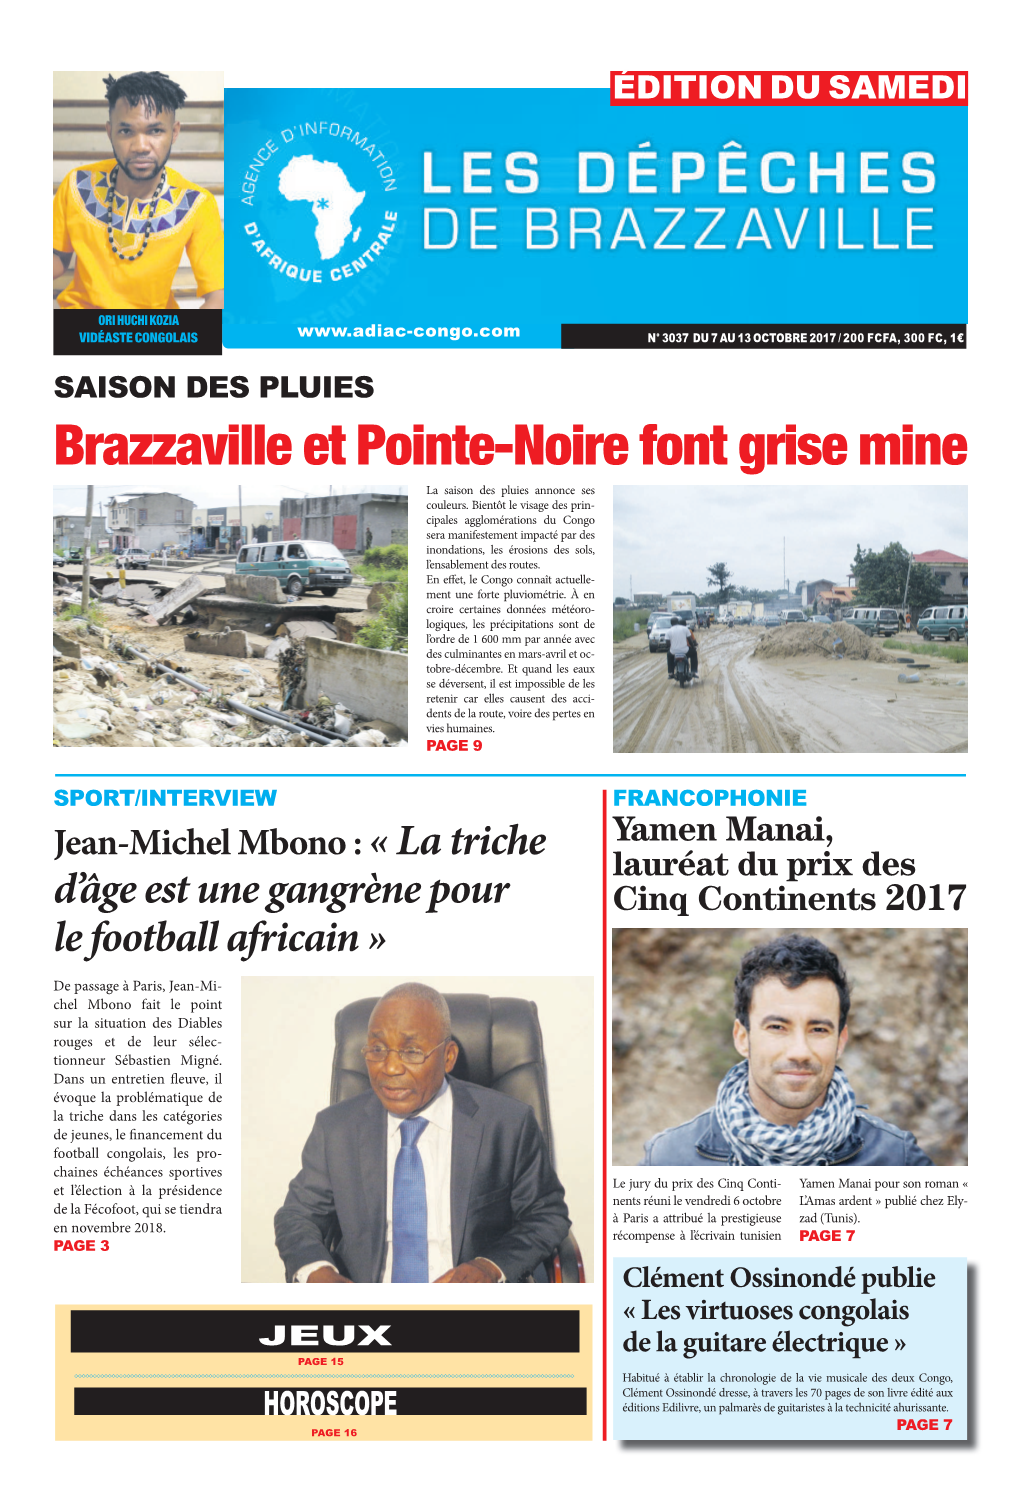 Brazzaville Et Pointe-Noire Font Grise Mine La Saison Des Pluies Annonce Ses Couleurs